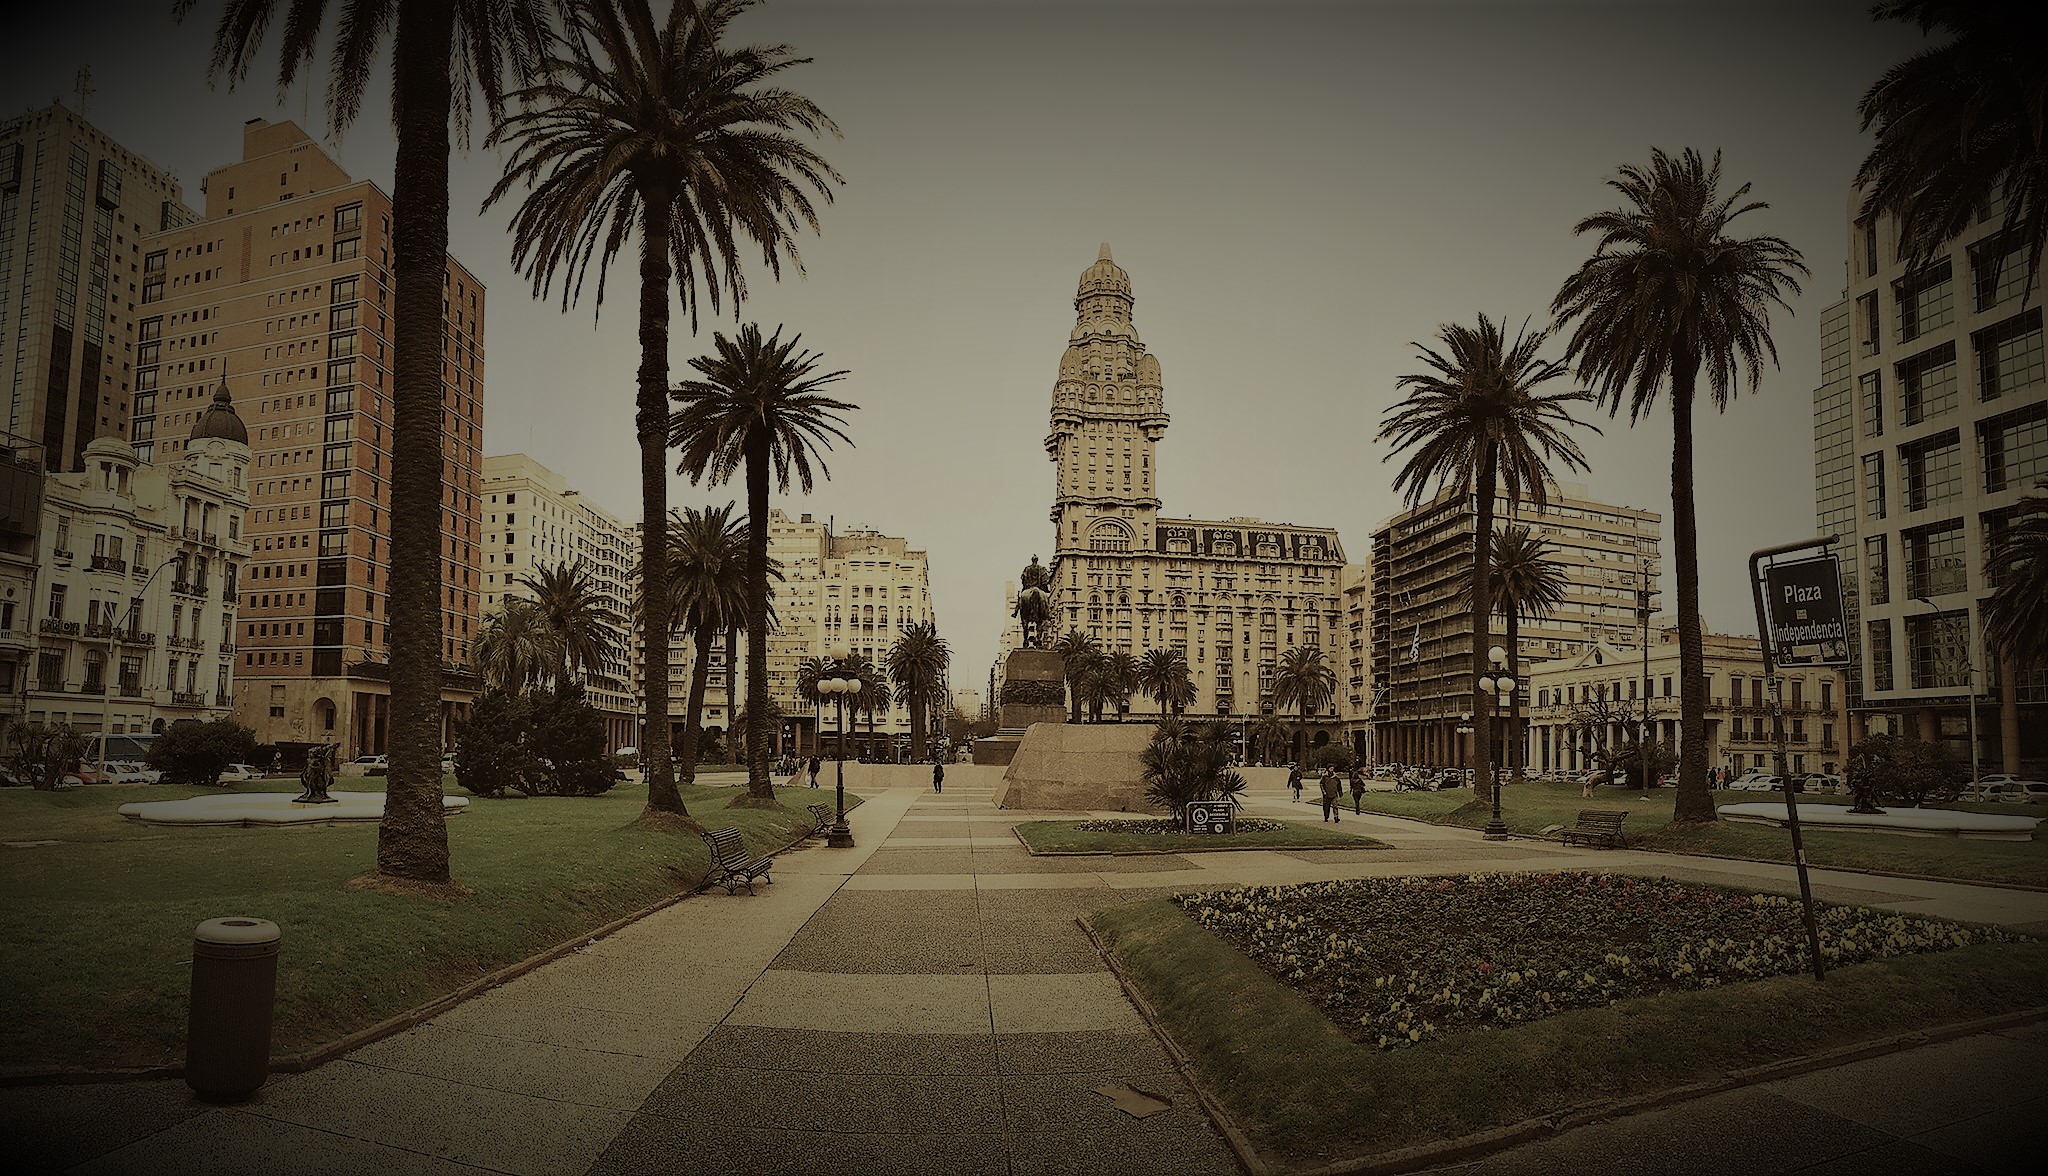 My Montevideo Meanderings